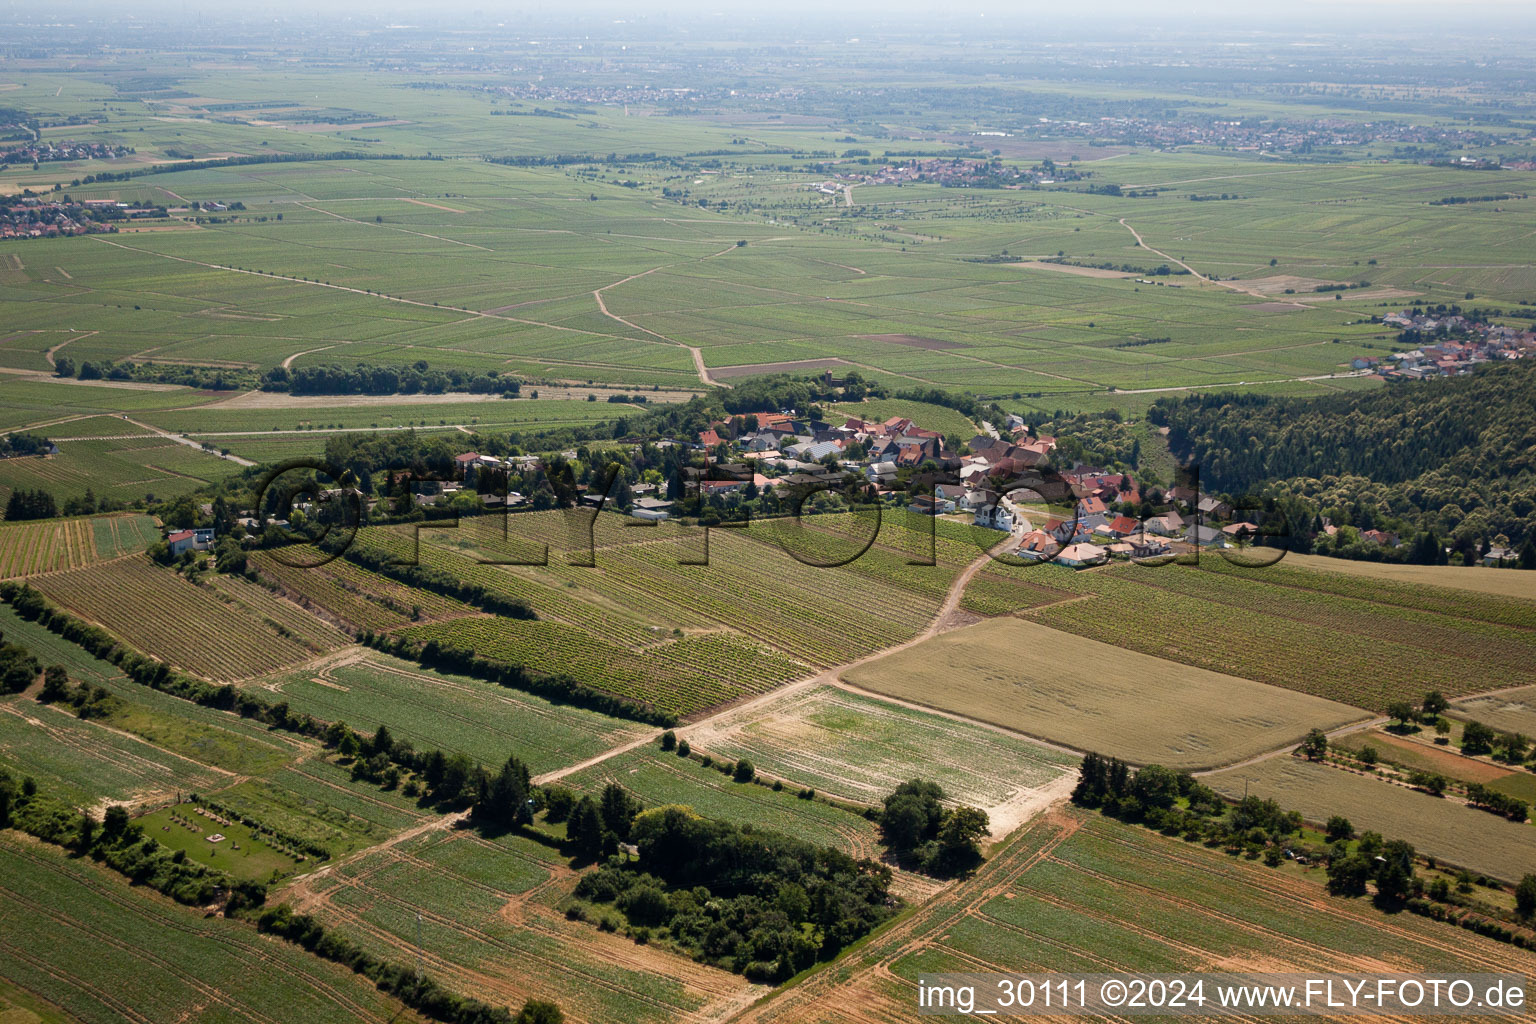 Village view in Mertesheim in the state Rhineland-Palatinate